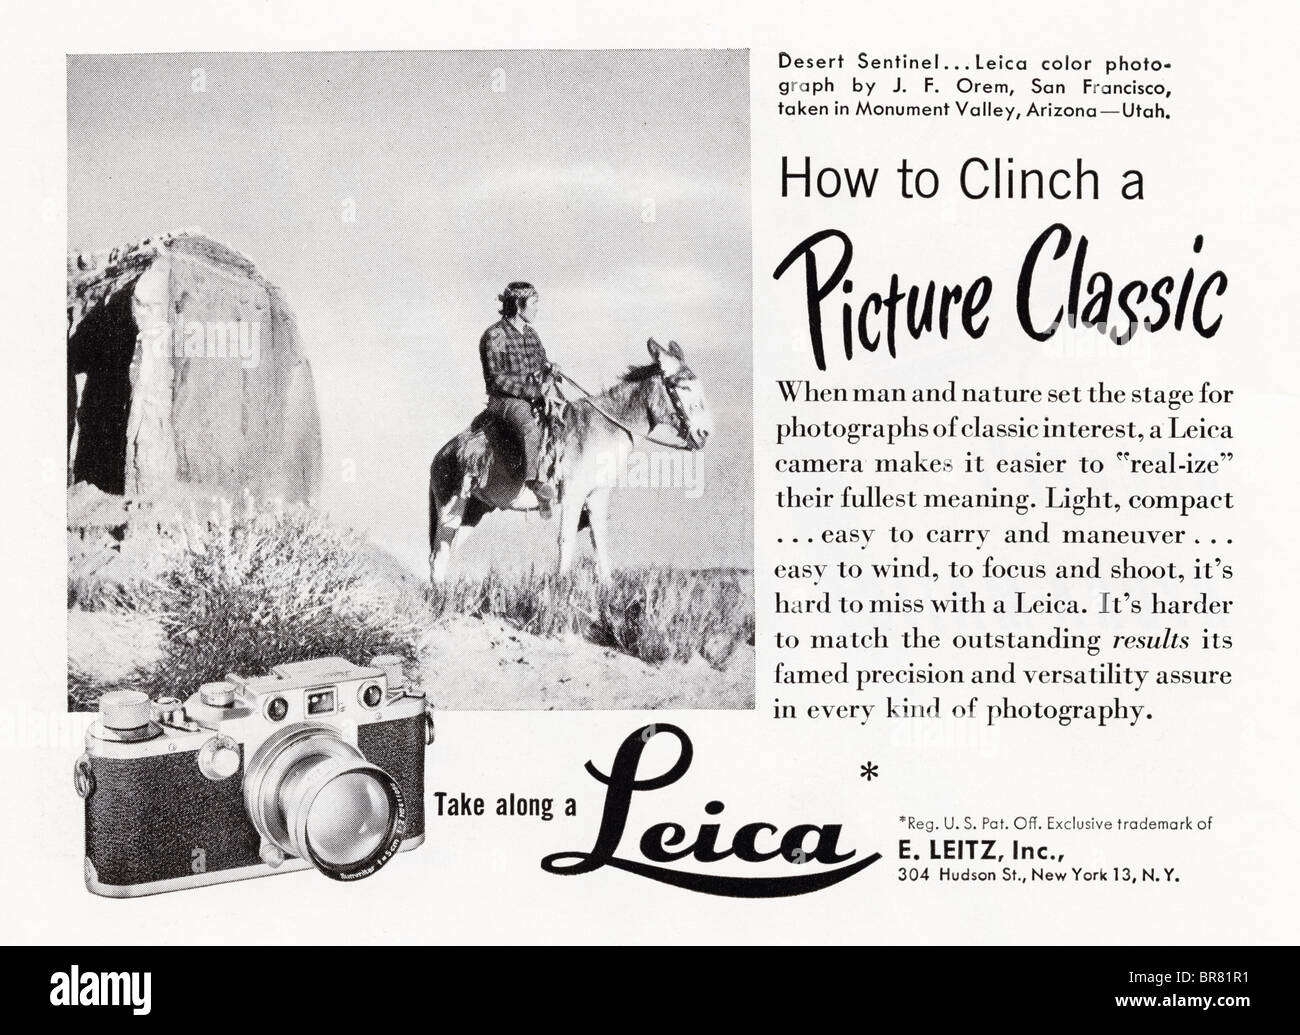 Bianco e nero rivista americana annuncio per Leica fotocamere con pellicola circa 1950 Foto Stock